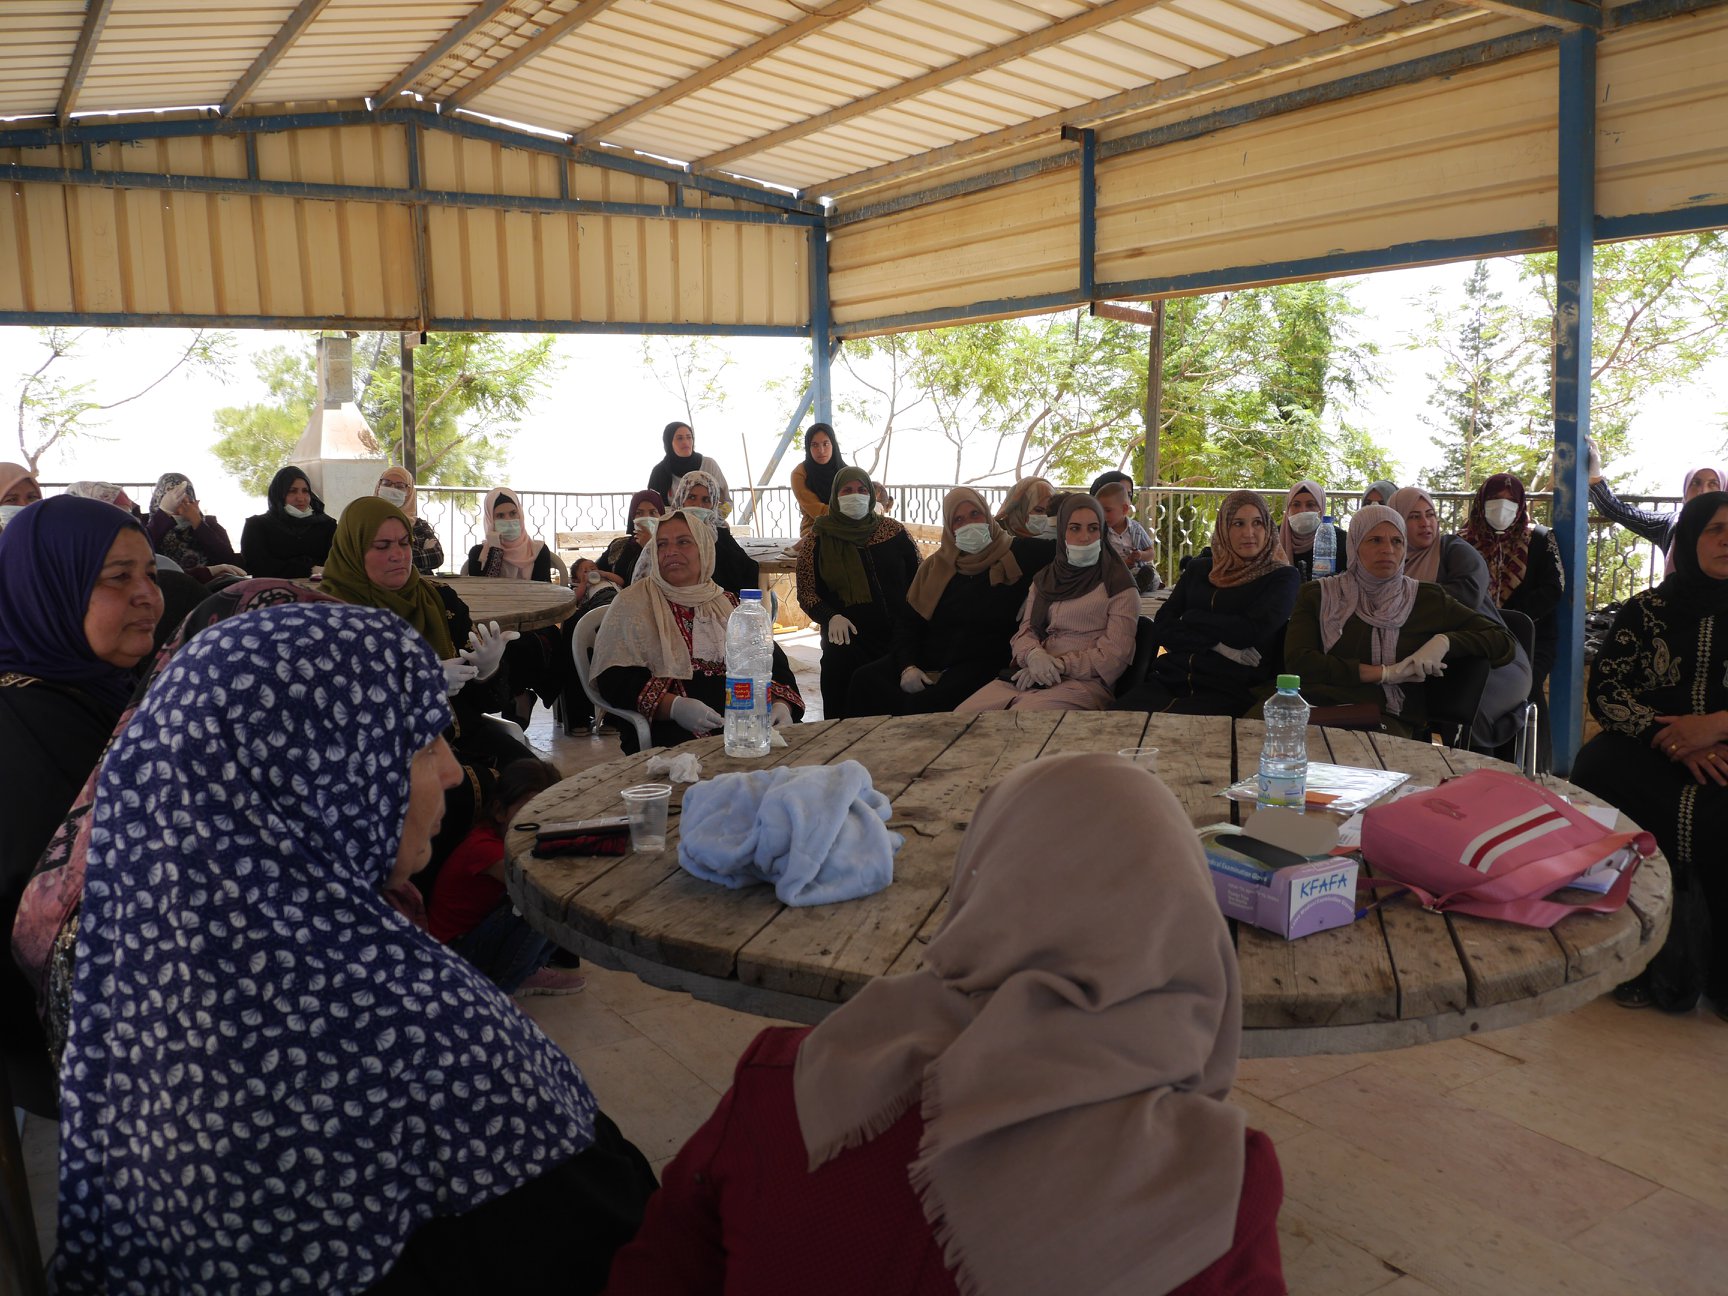  لجنة الحماية النسوية في مسافر بني نعيم  ودورها القيادي في الاستجابة الانسانية لحاجات  النساء والفتيات